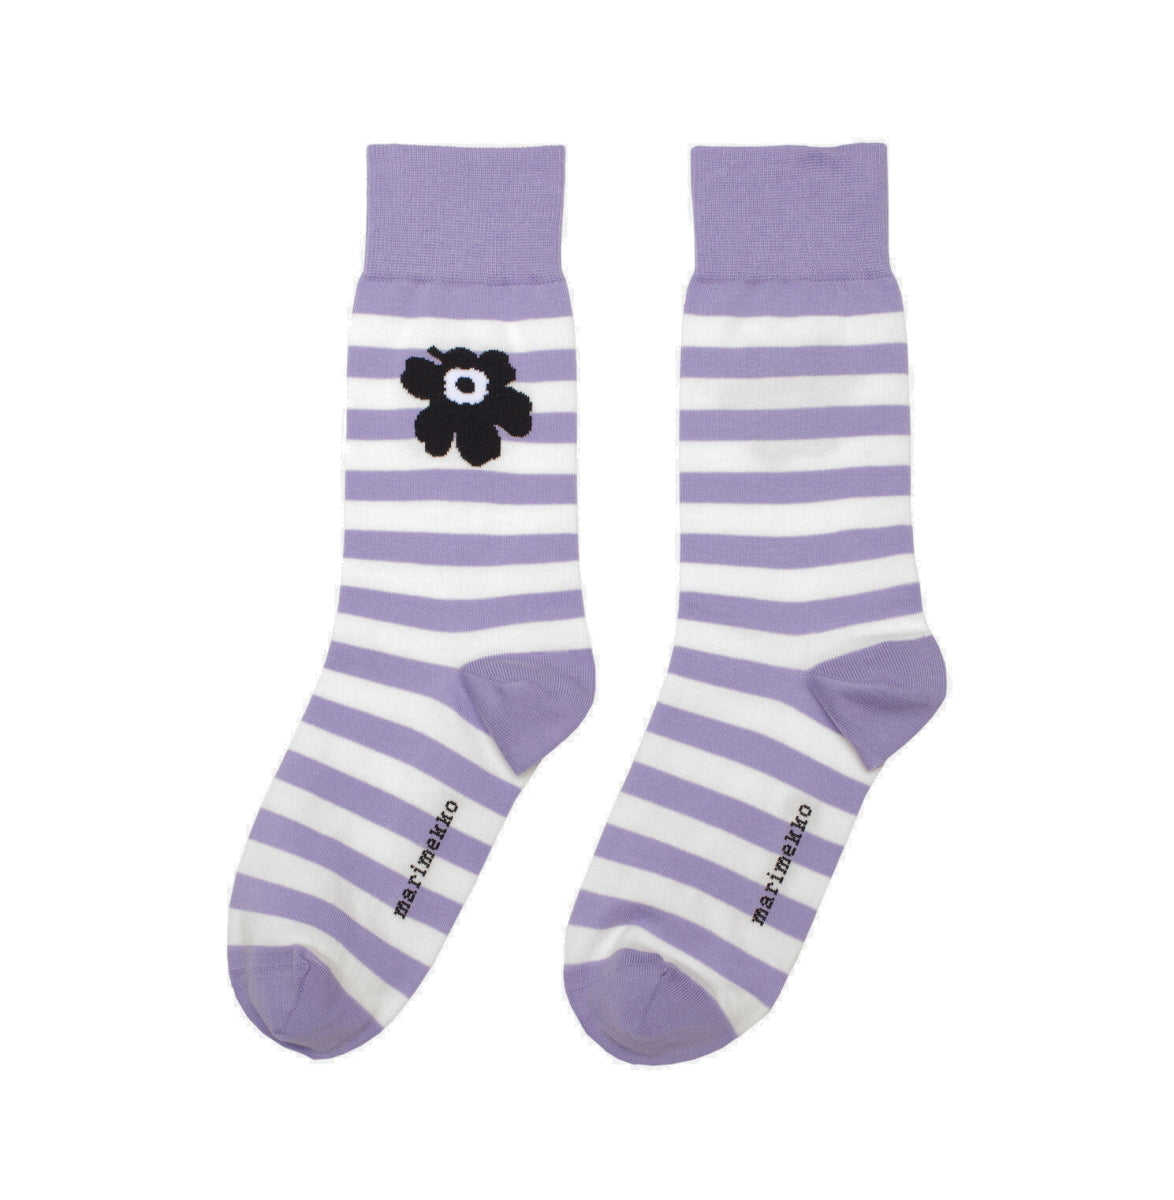 Kasvaa Socks Lavender 40-42